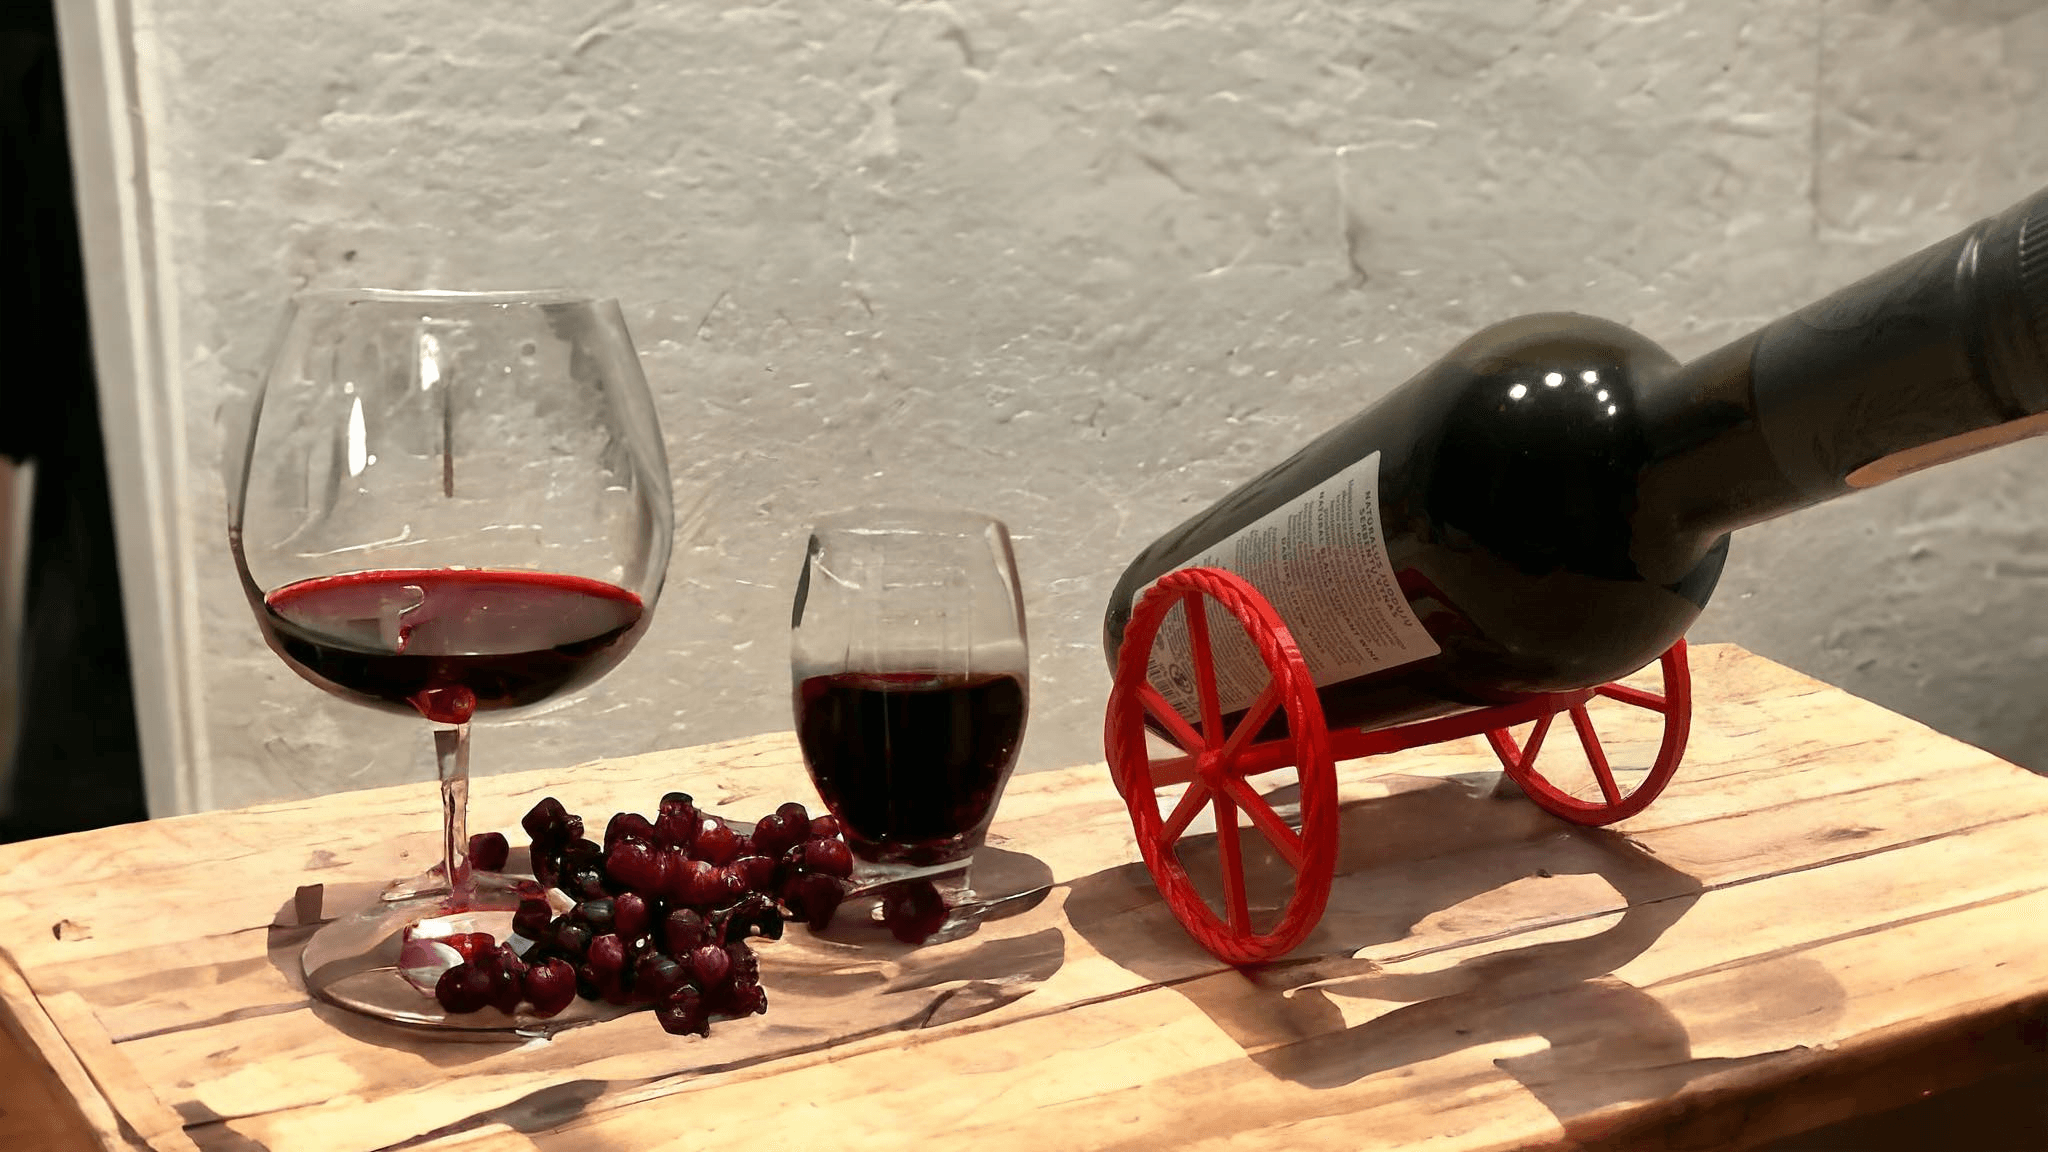 Cannon design wine bottle holder 3d model